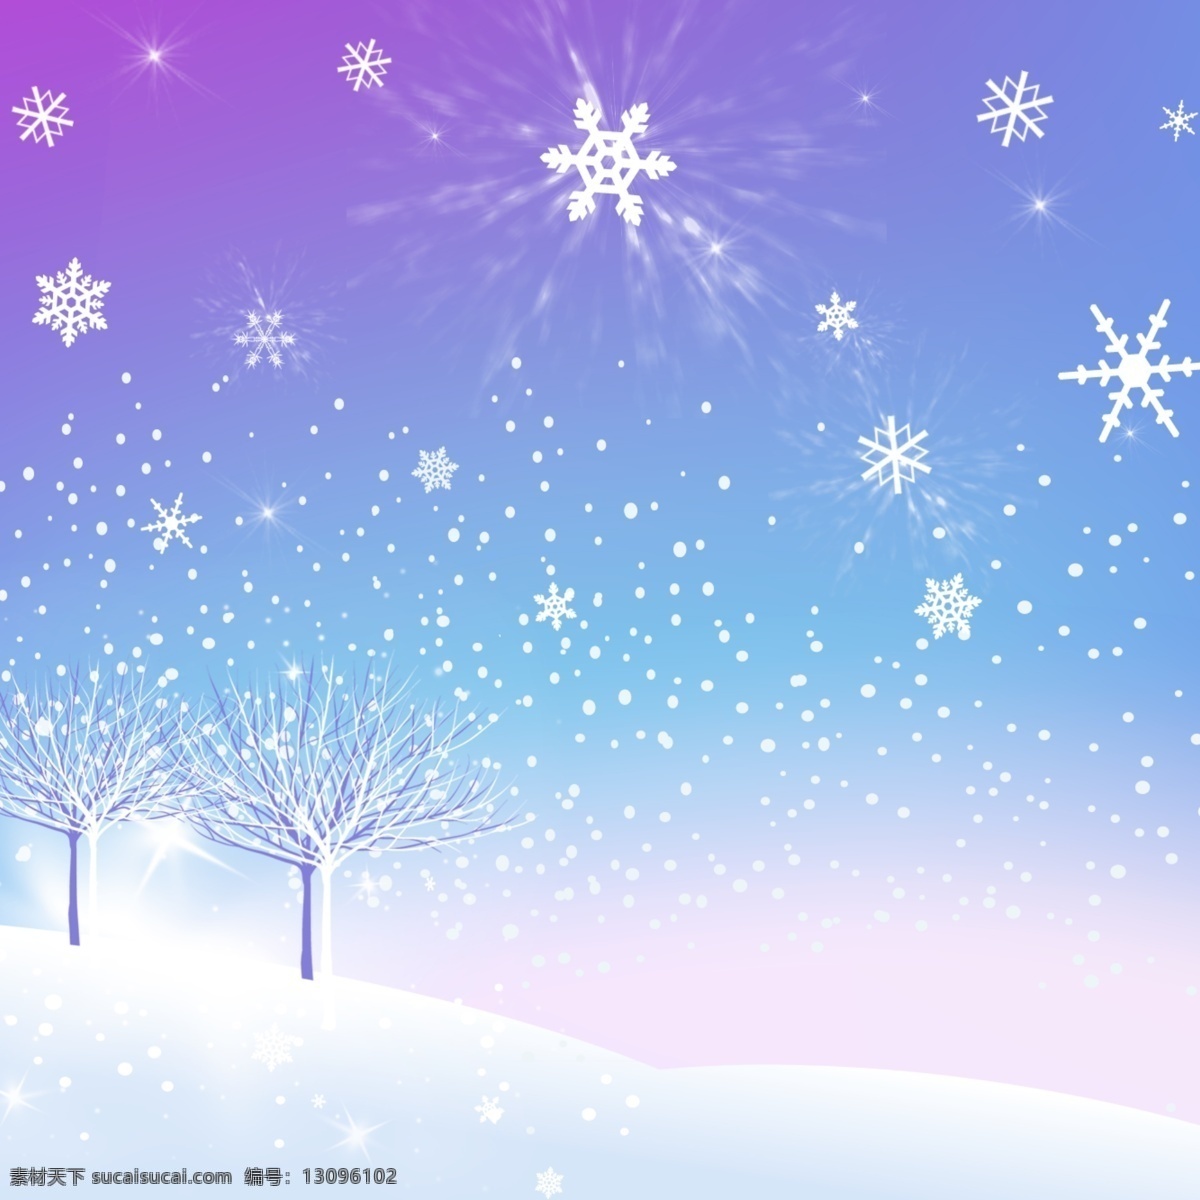 冬季 雪花 飘落 背景 图 白雪 蓝色天空 寒冷